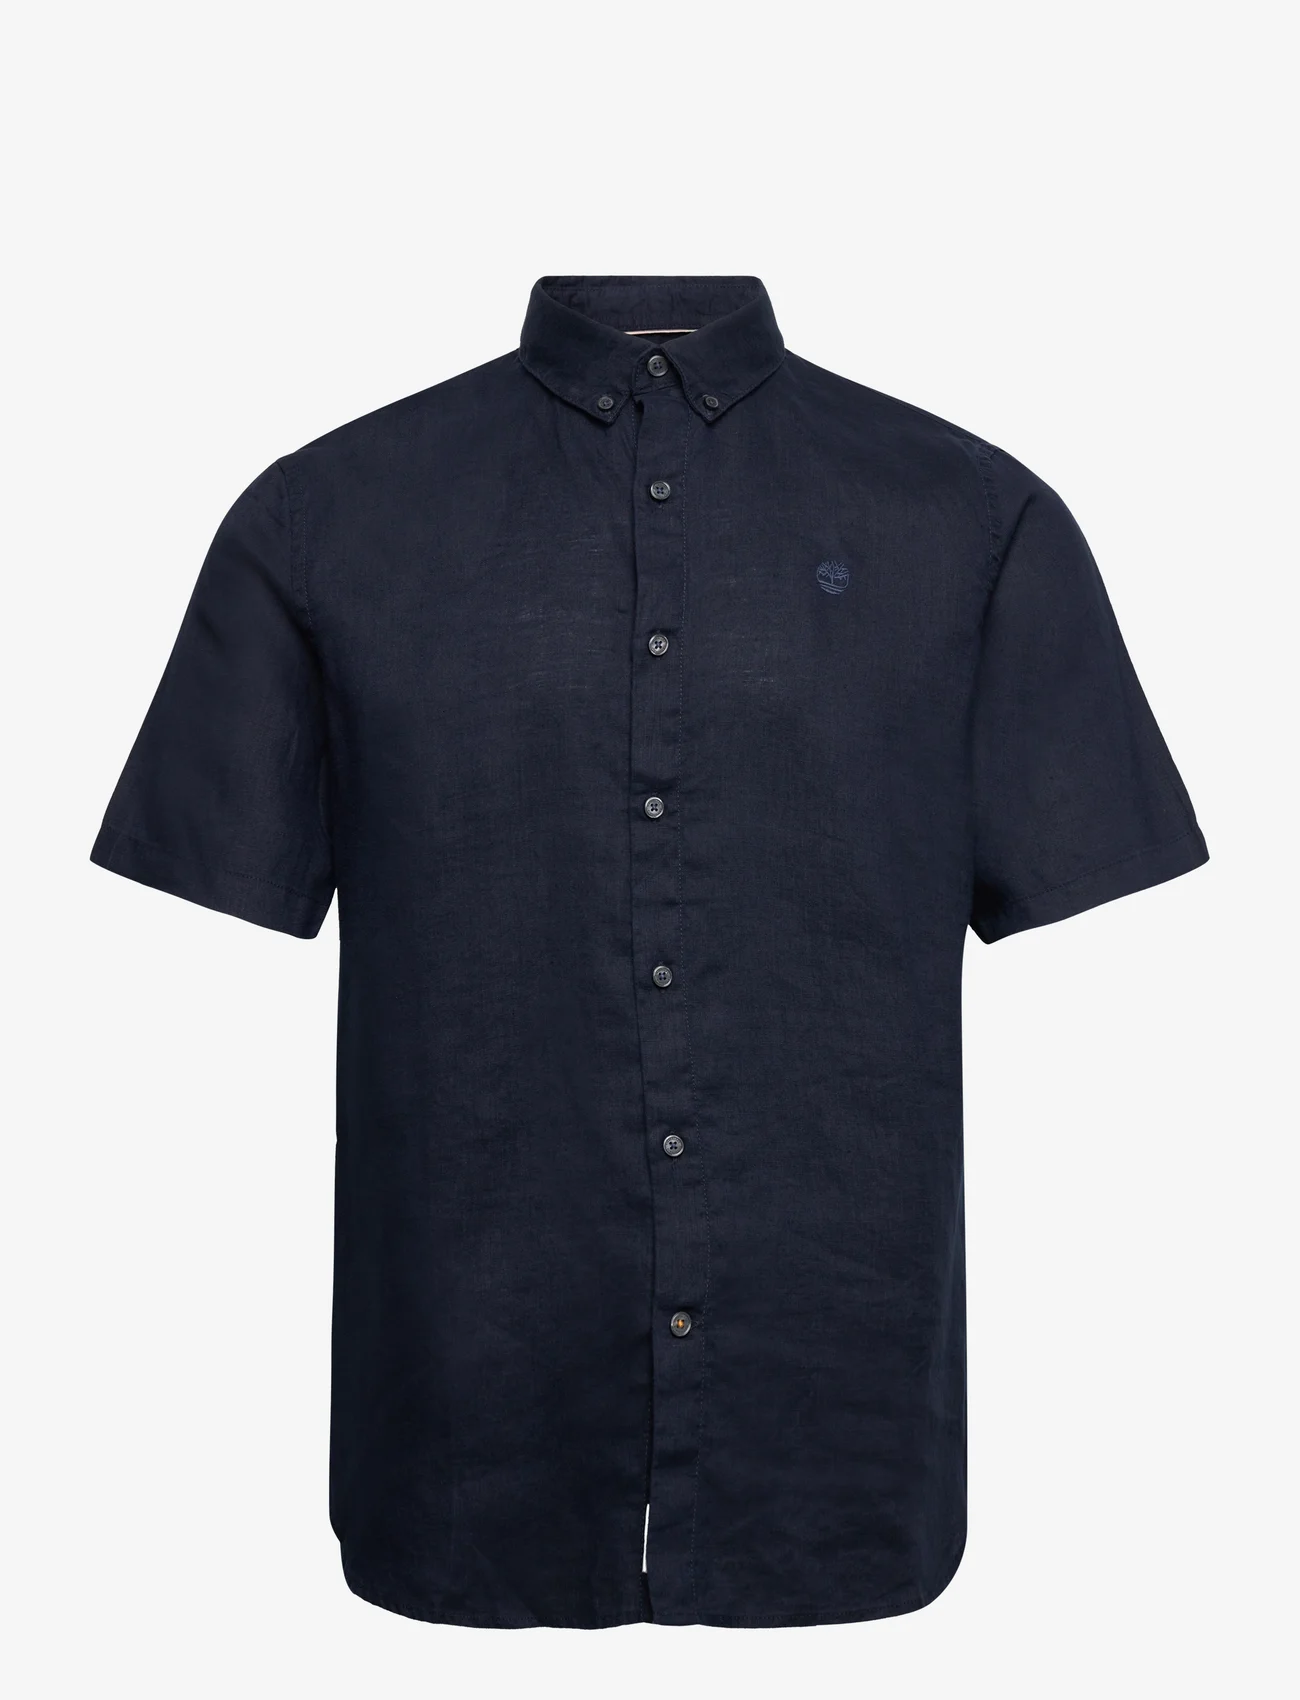 Timberland - MILL BROOK Linen Short Sleeve Shirt DARK SAPPHIRE - linskjorter - dark sapphire - 0